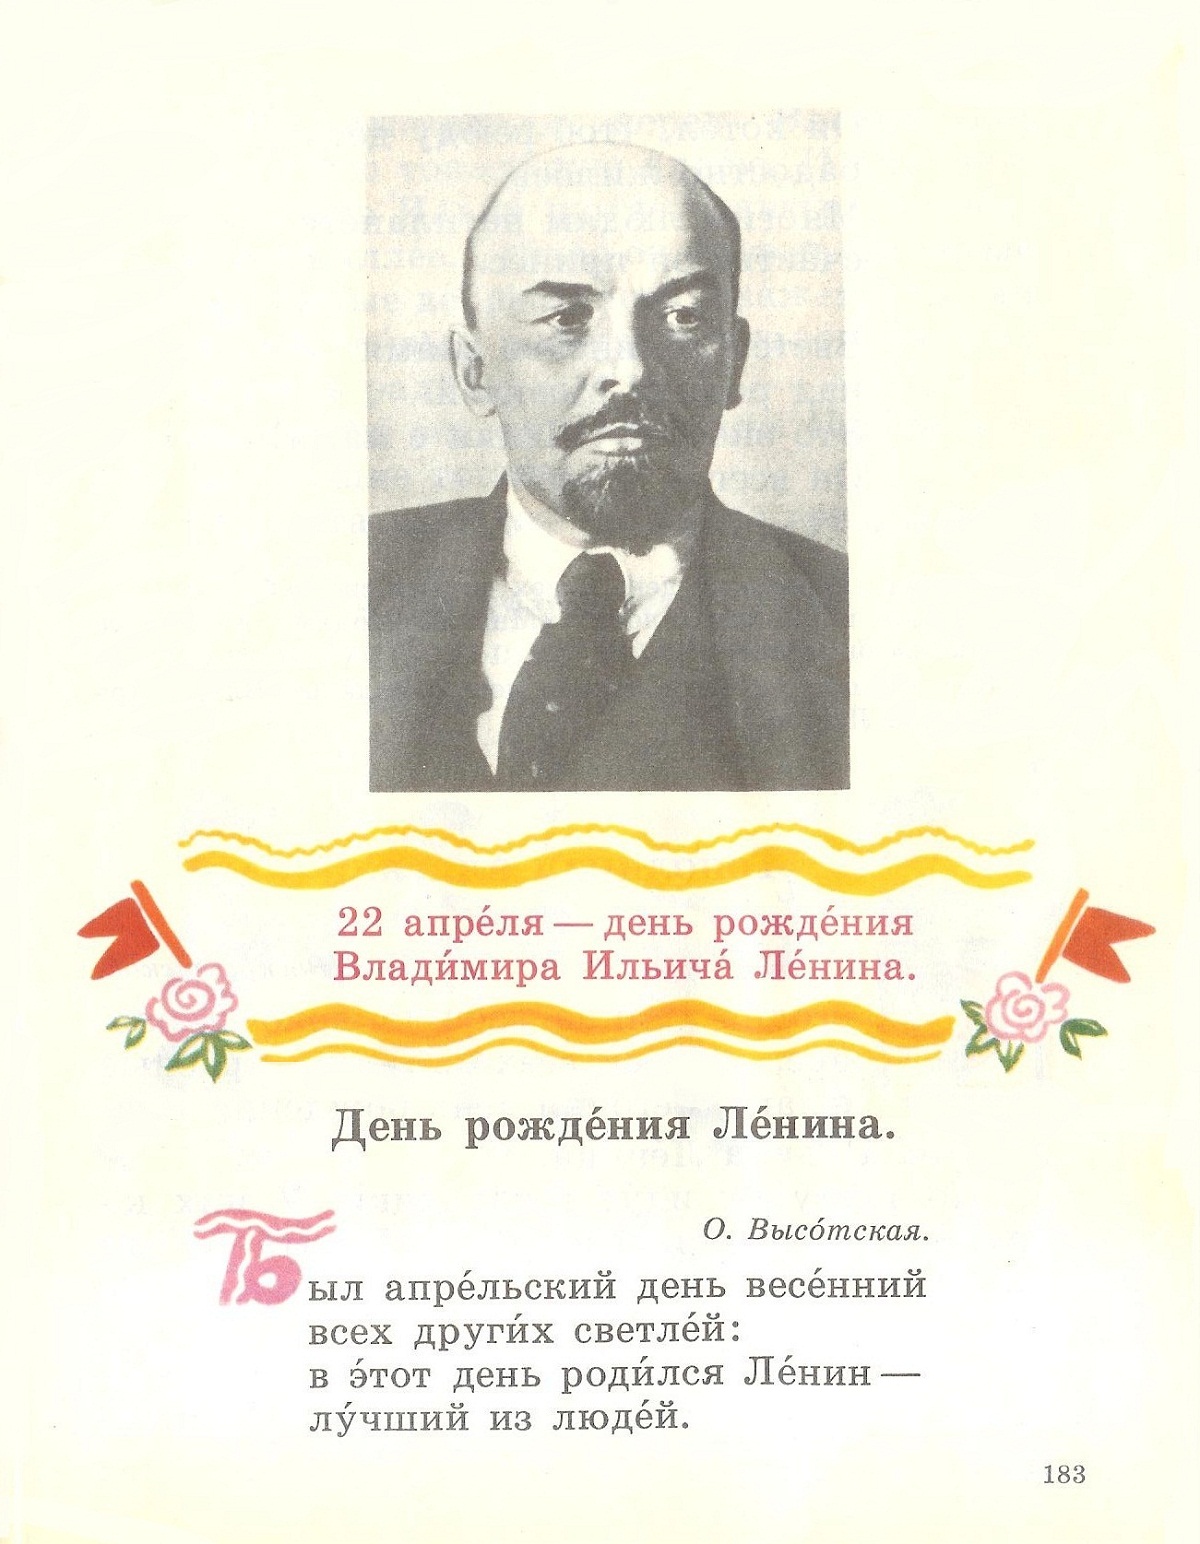 22 апреля день рождения ленина и гитлера. 22 Апреля день рождения Владимира Ильича Ленина. 22 Апреля день рождения Ленина стихи. 22 Апреля родился Ленин открытки.